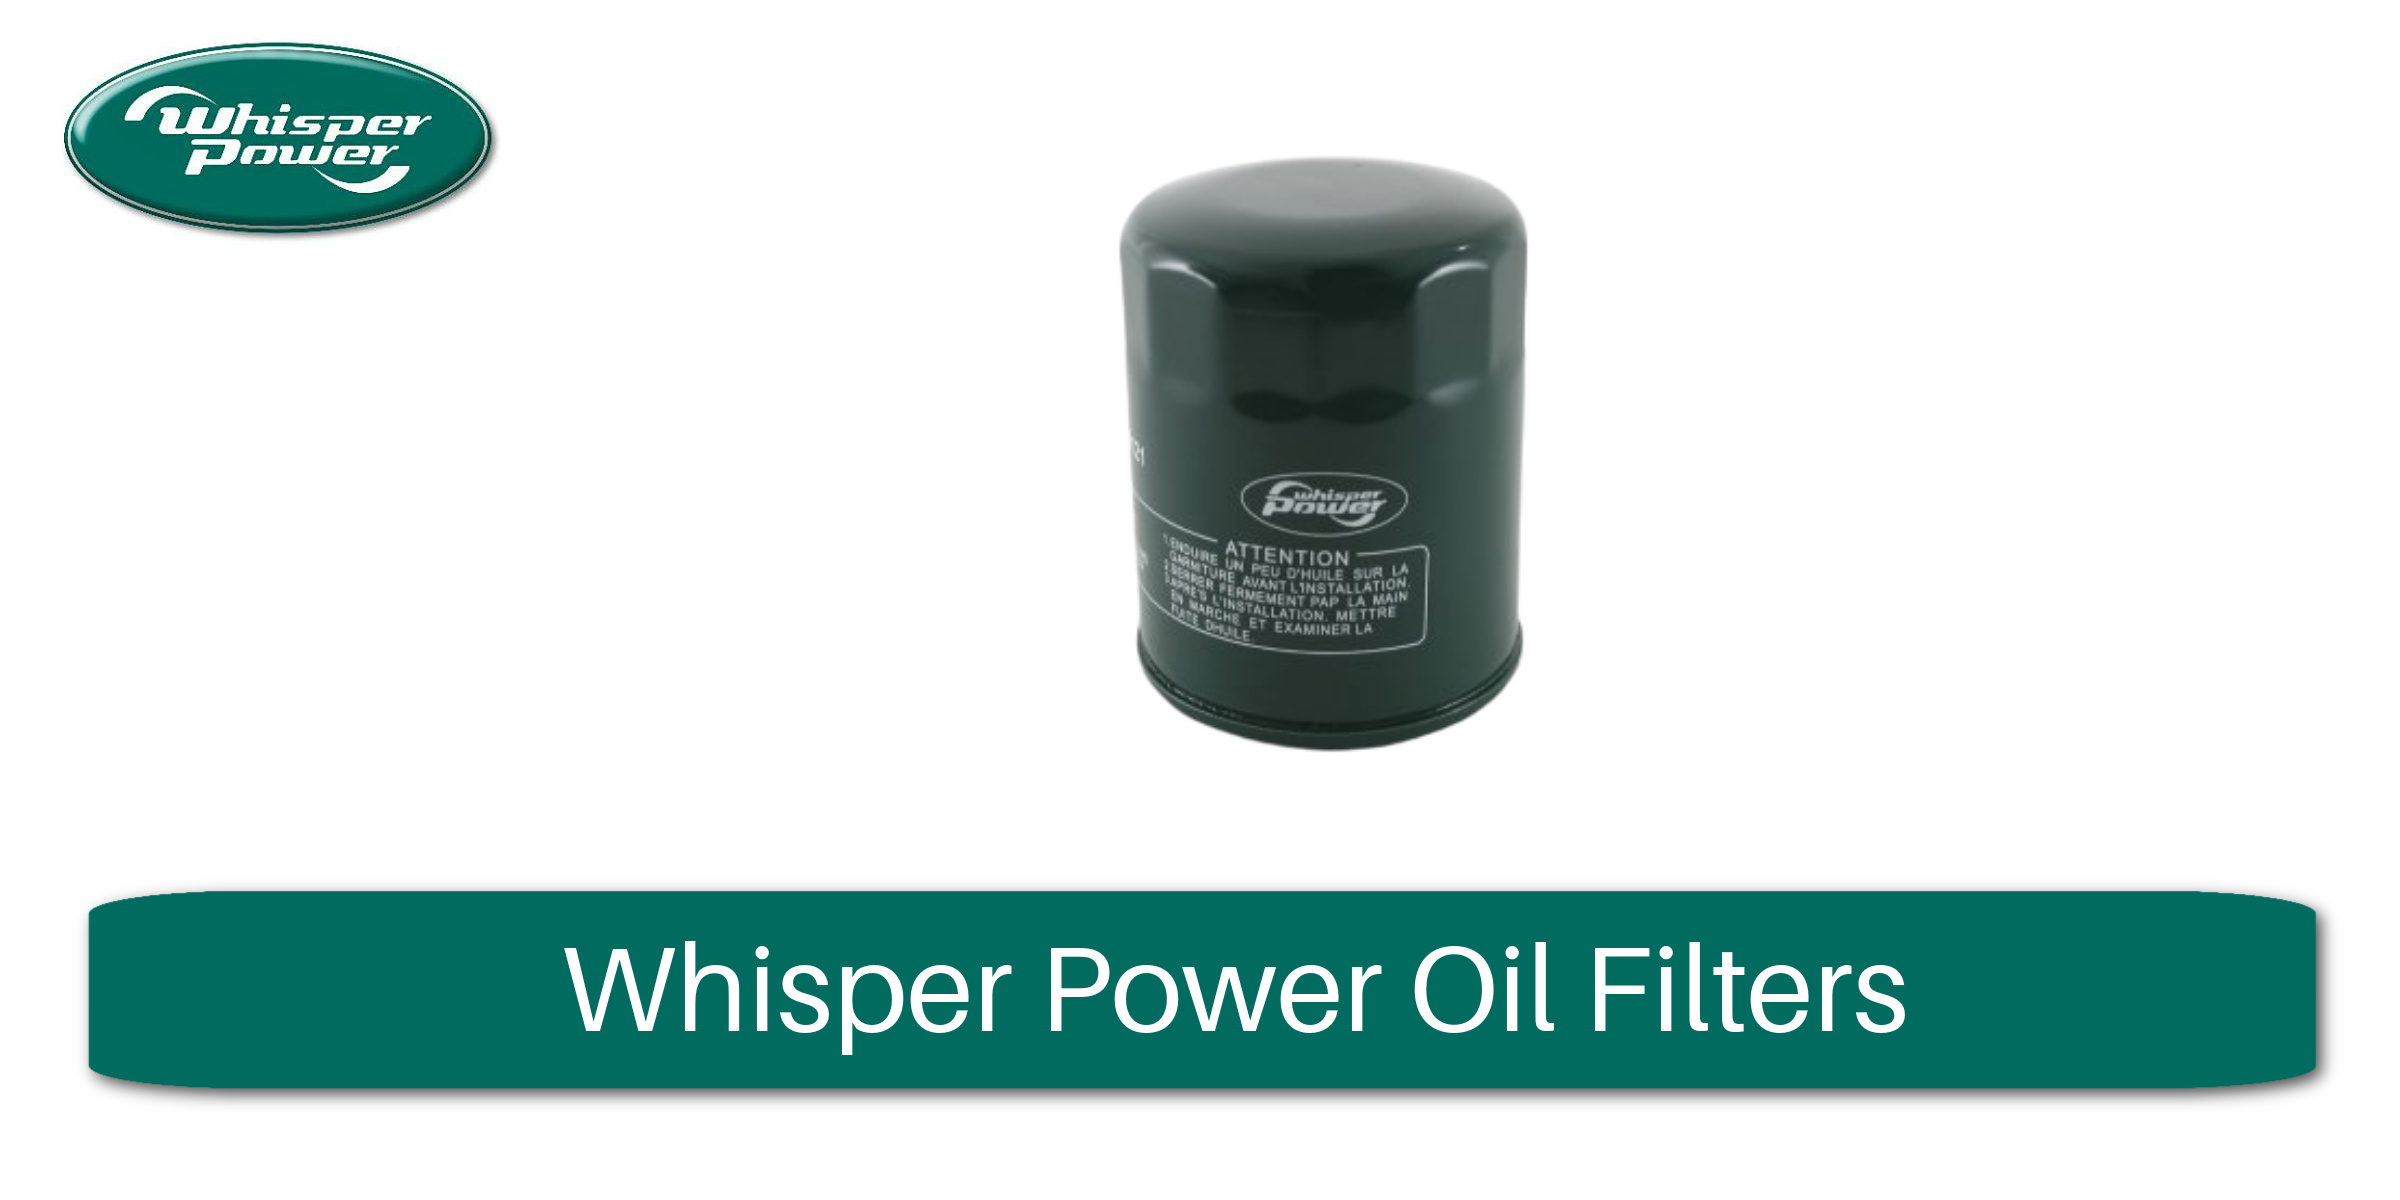 Whisper Power Oil Filters